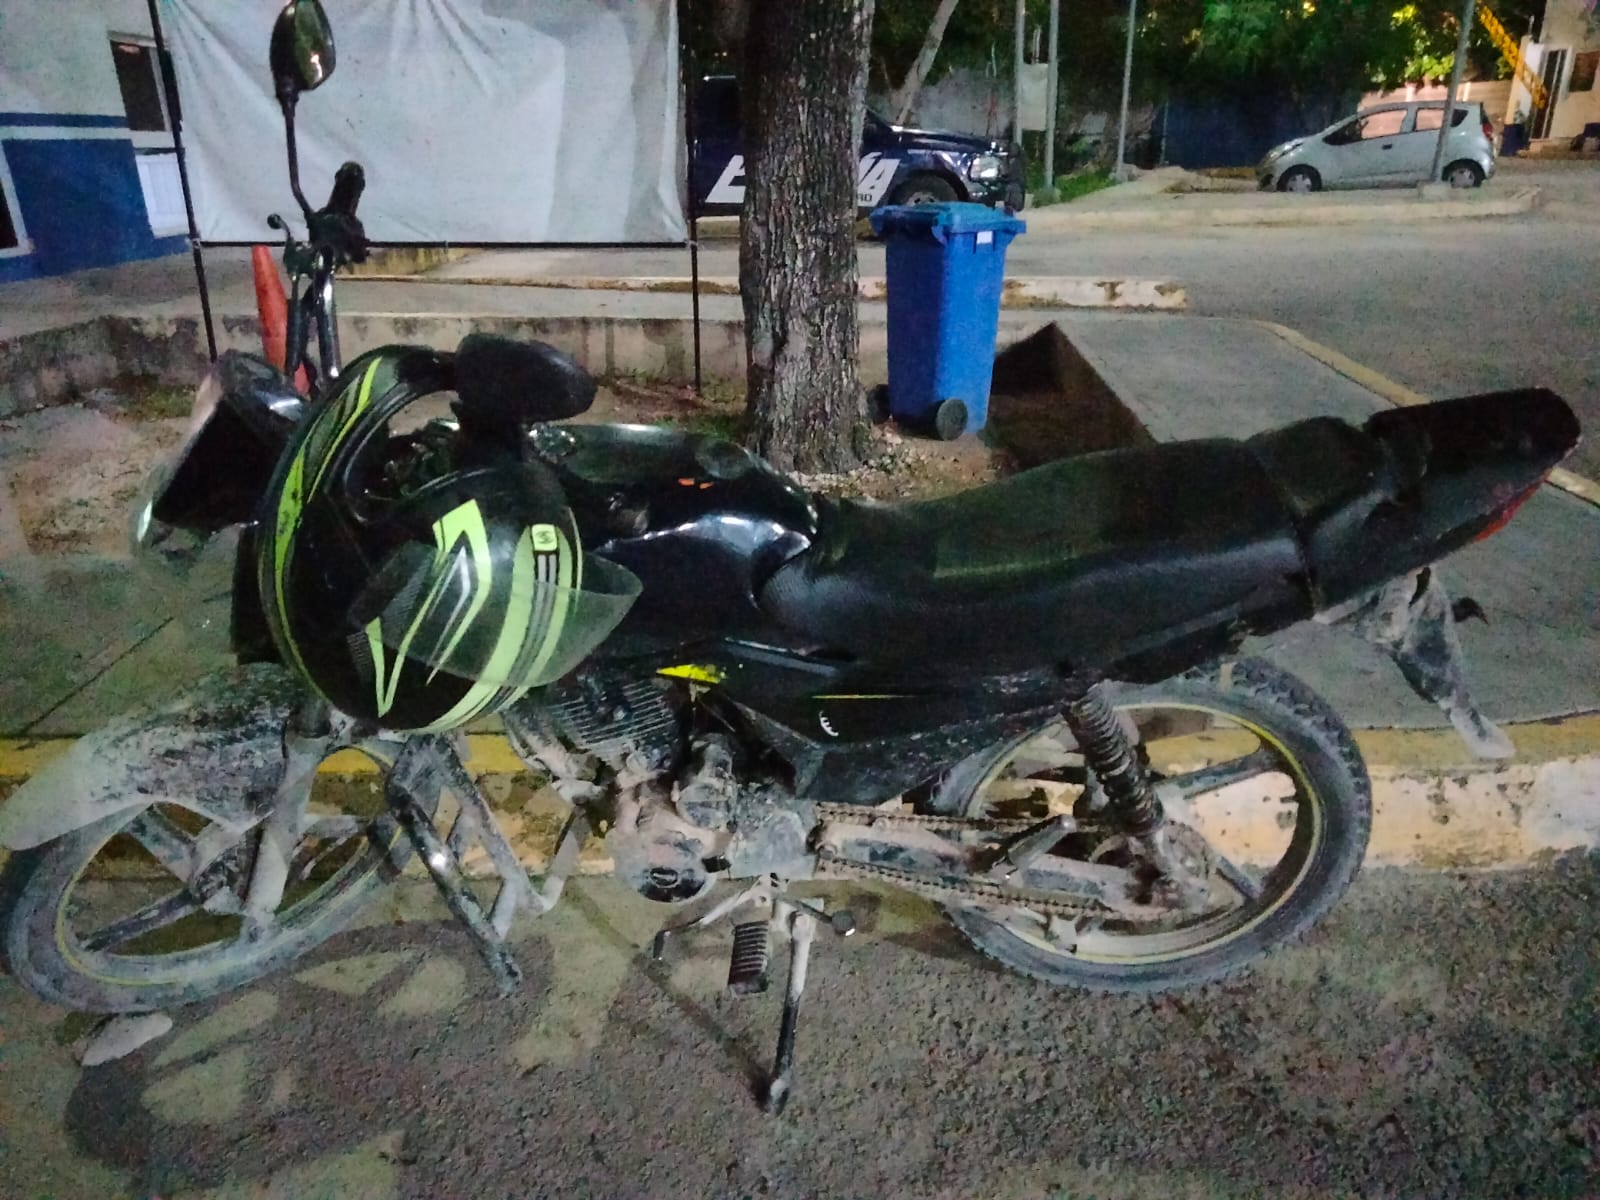 Dos arrestos en Solidaridad: Motocicleta con placas falsas y agresión en un incidente vial